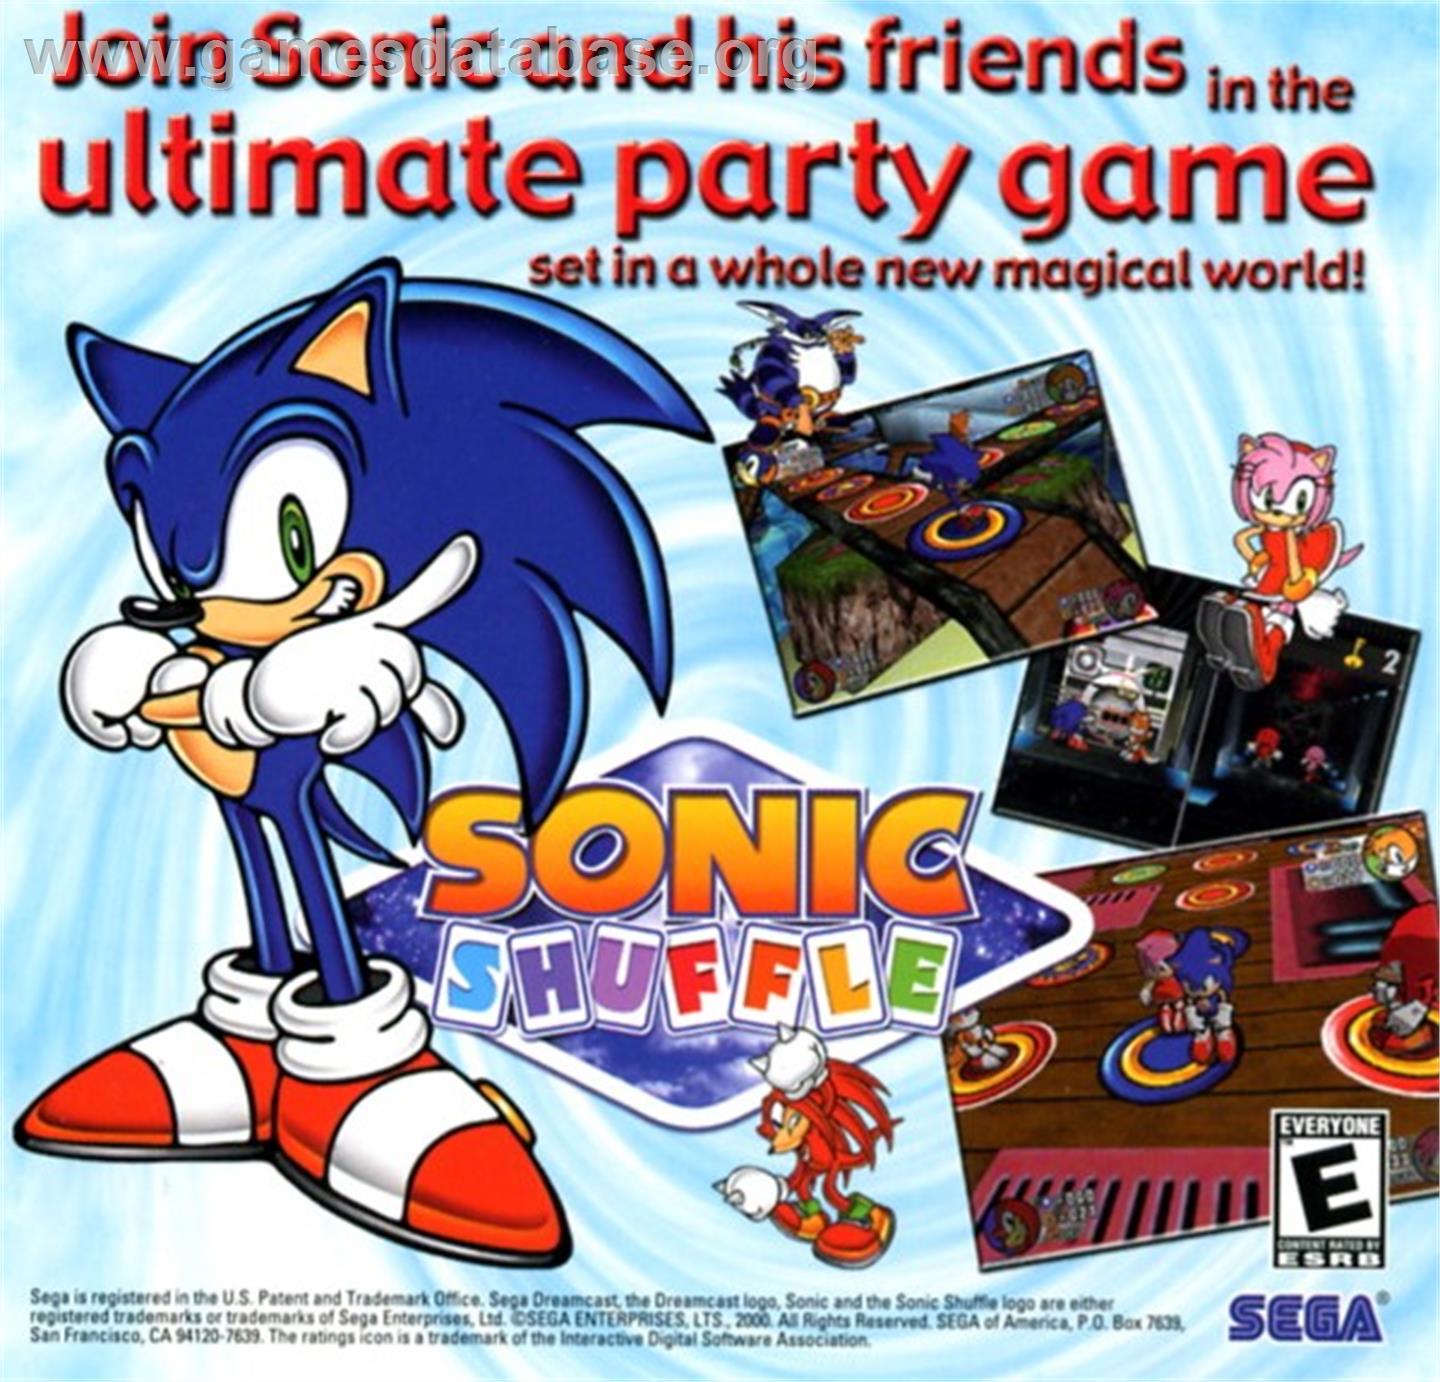 Sonic Shuffle - Sega Dreamcast - Artwork - Advert